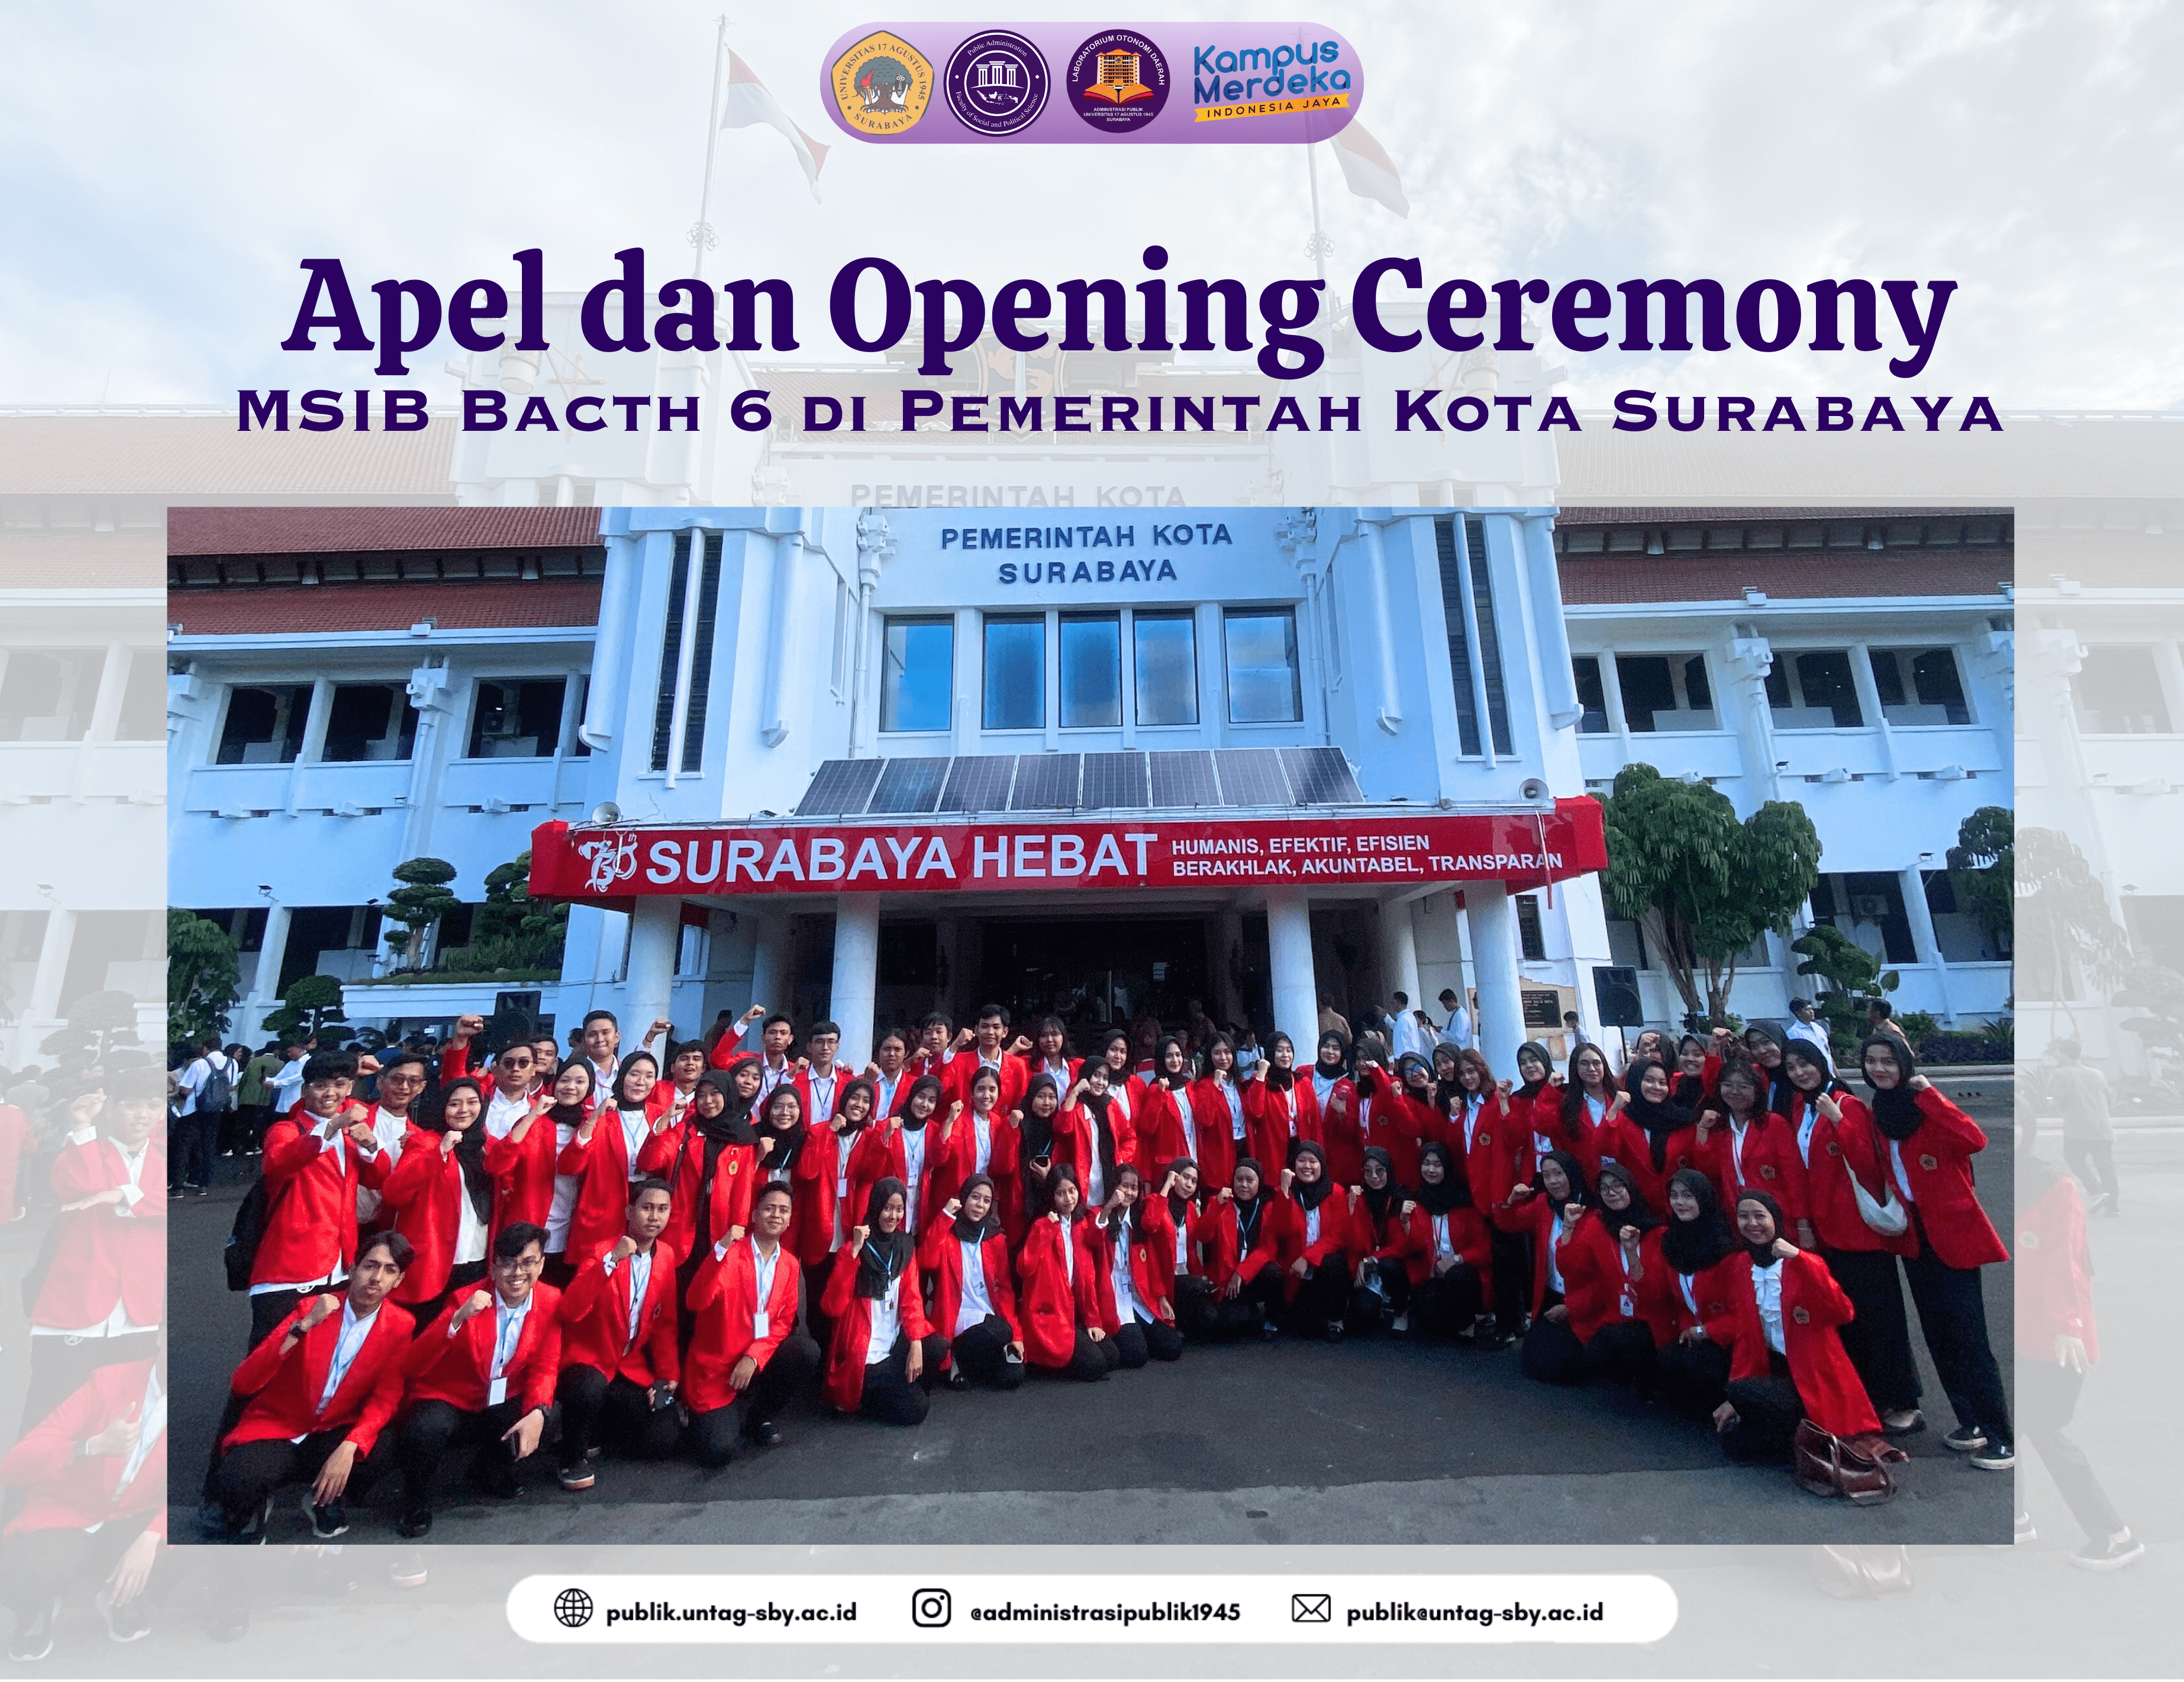 Apel dan Opening Ceremony MSIB Bacth 6 di Pemerintah Kota Surabaya 